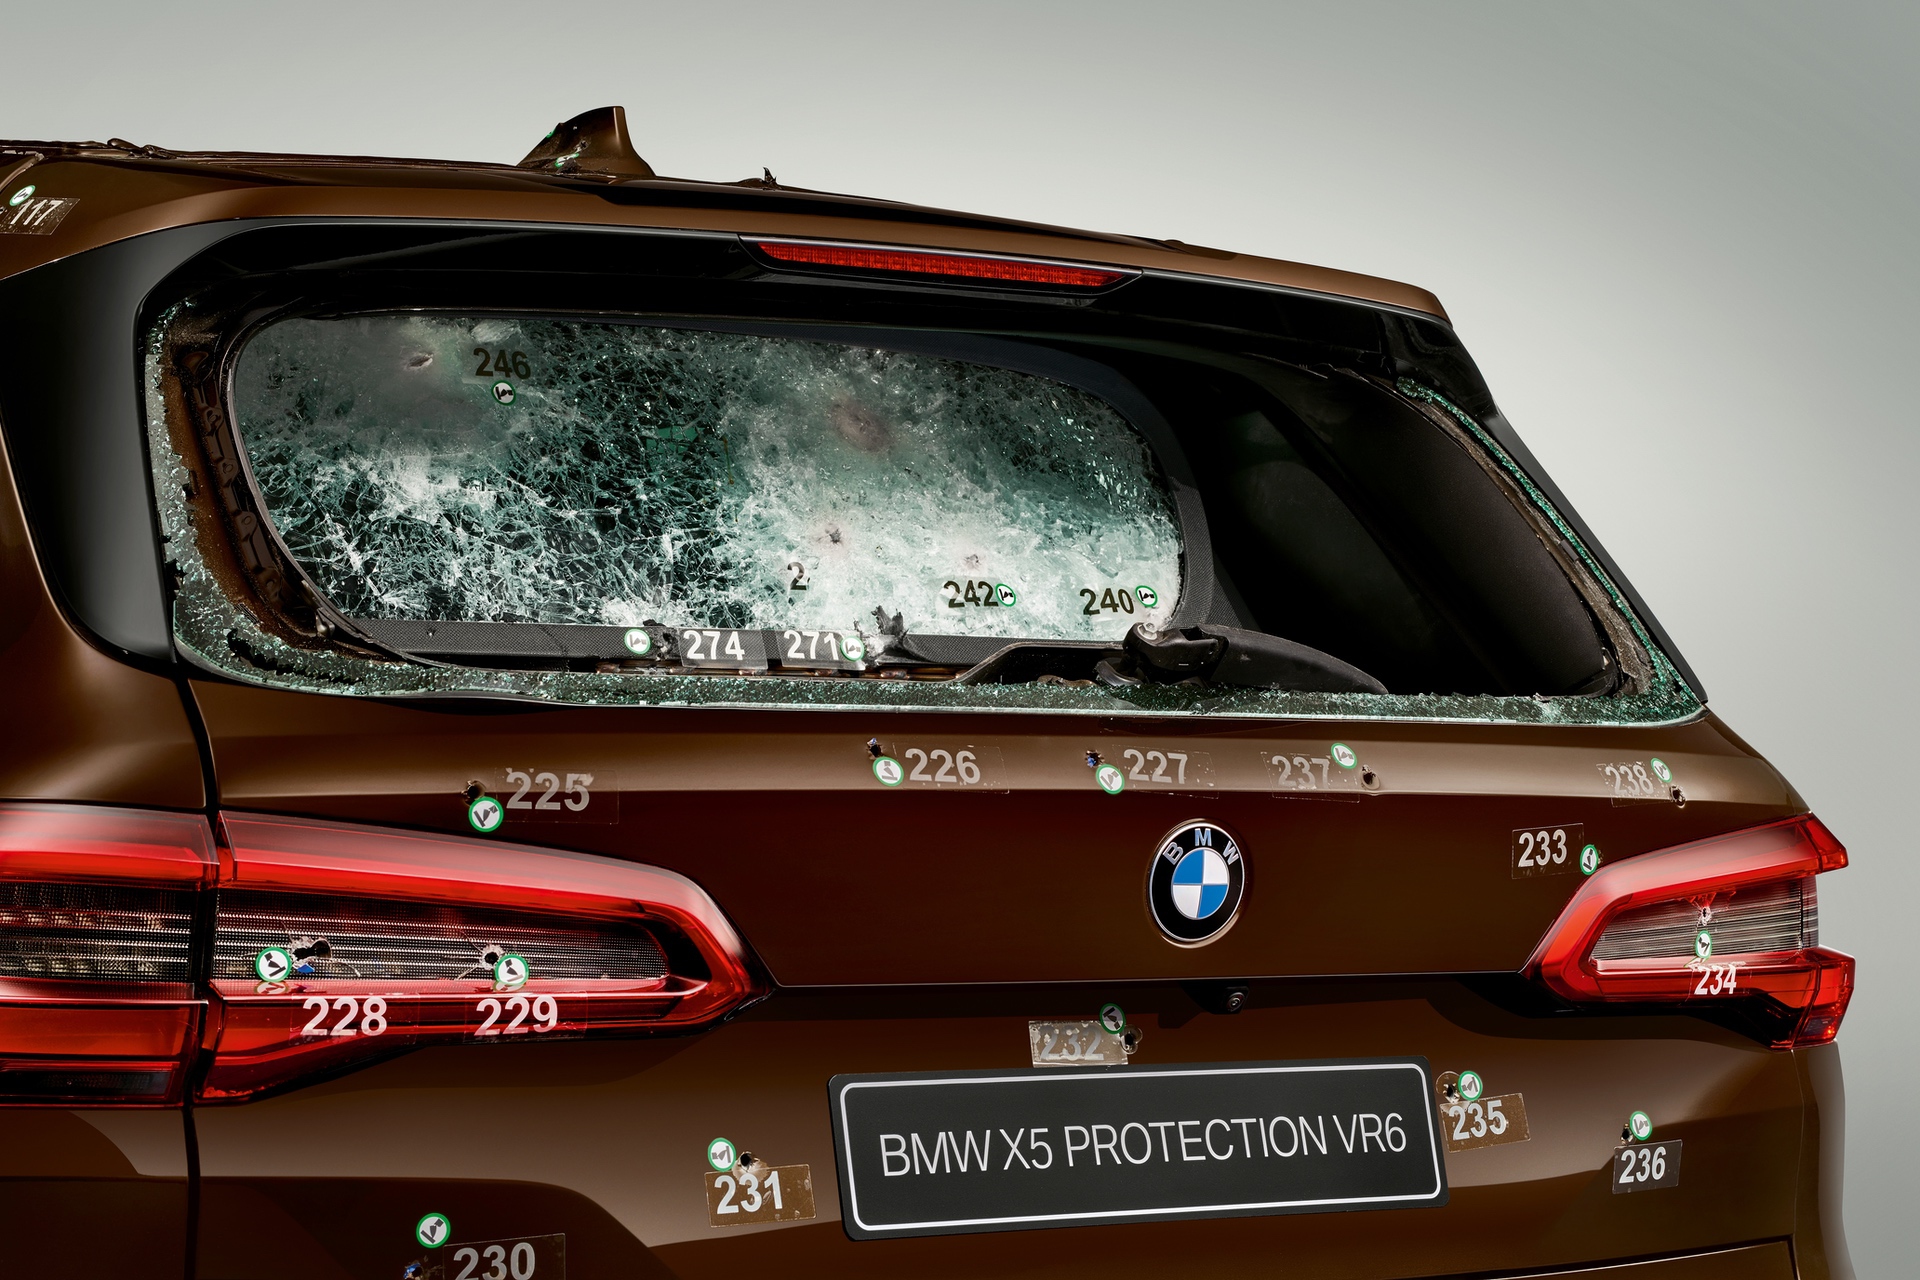 BMW X5 Protection VR6 - SUV bọc thép hạng sang - 03